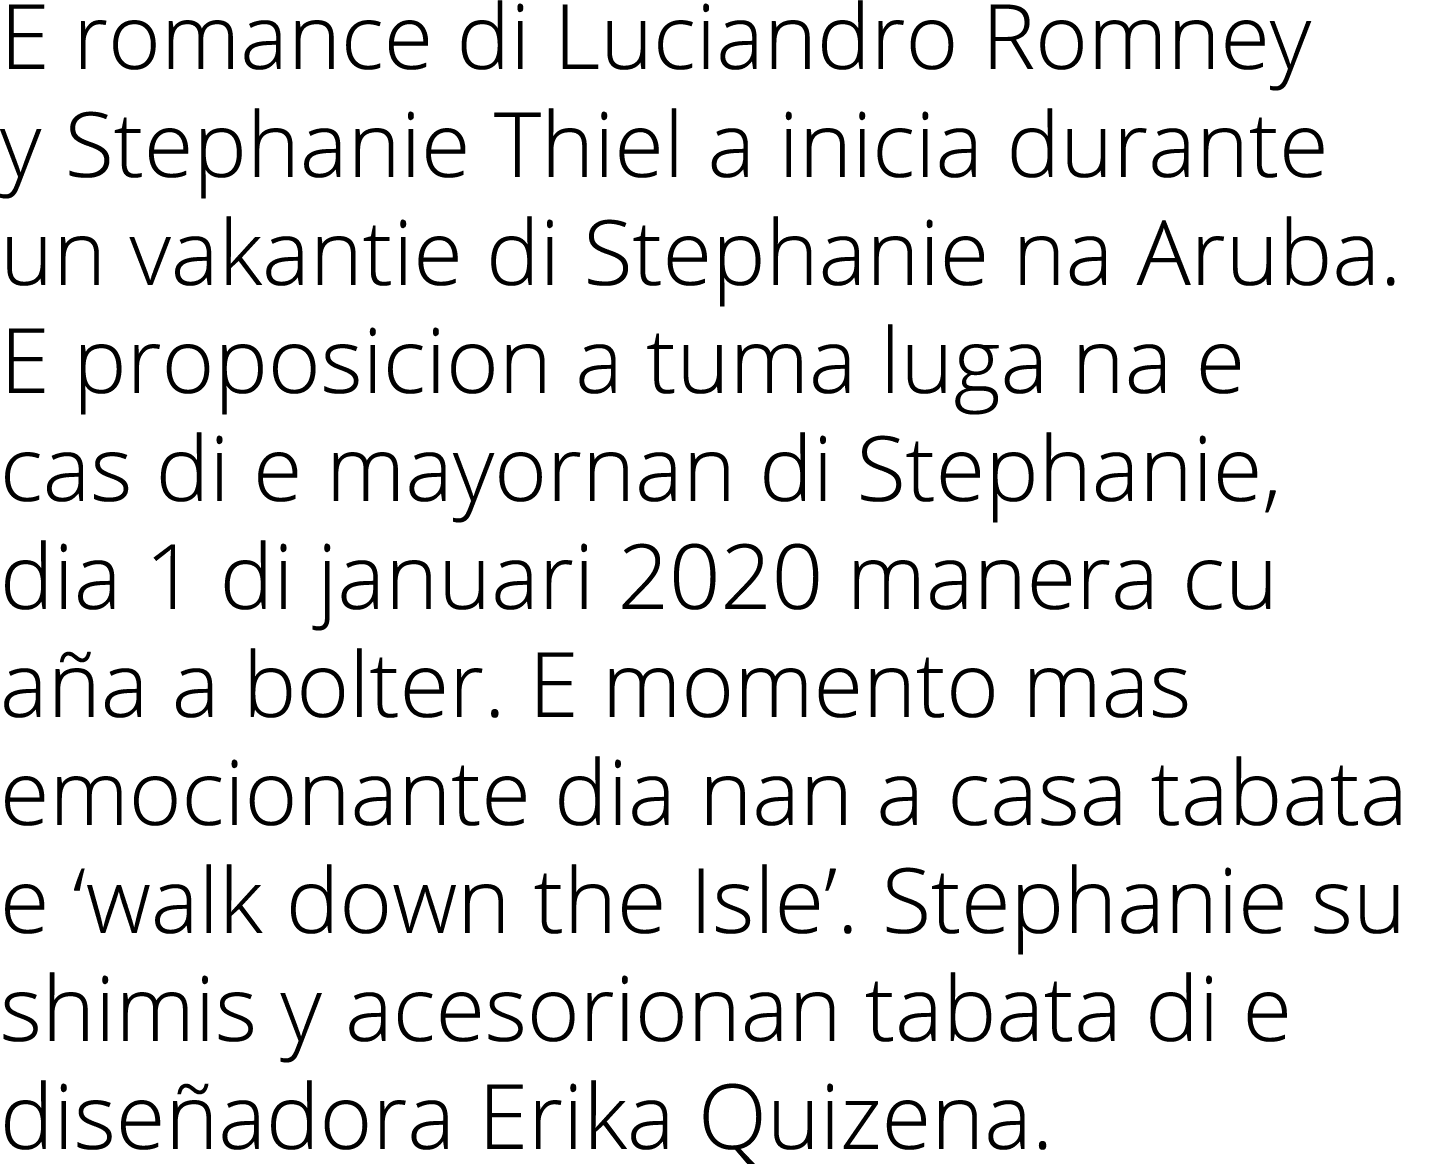 E romance di Luciandro Romney y Stephanie Thiel a inicia durante un vakantie di Stephanie na Aruba  E proposicion a t   